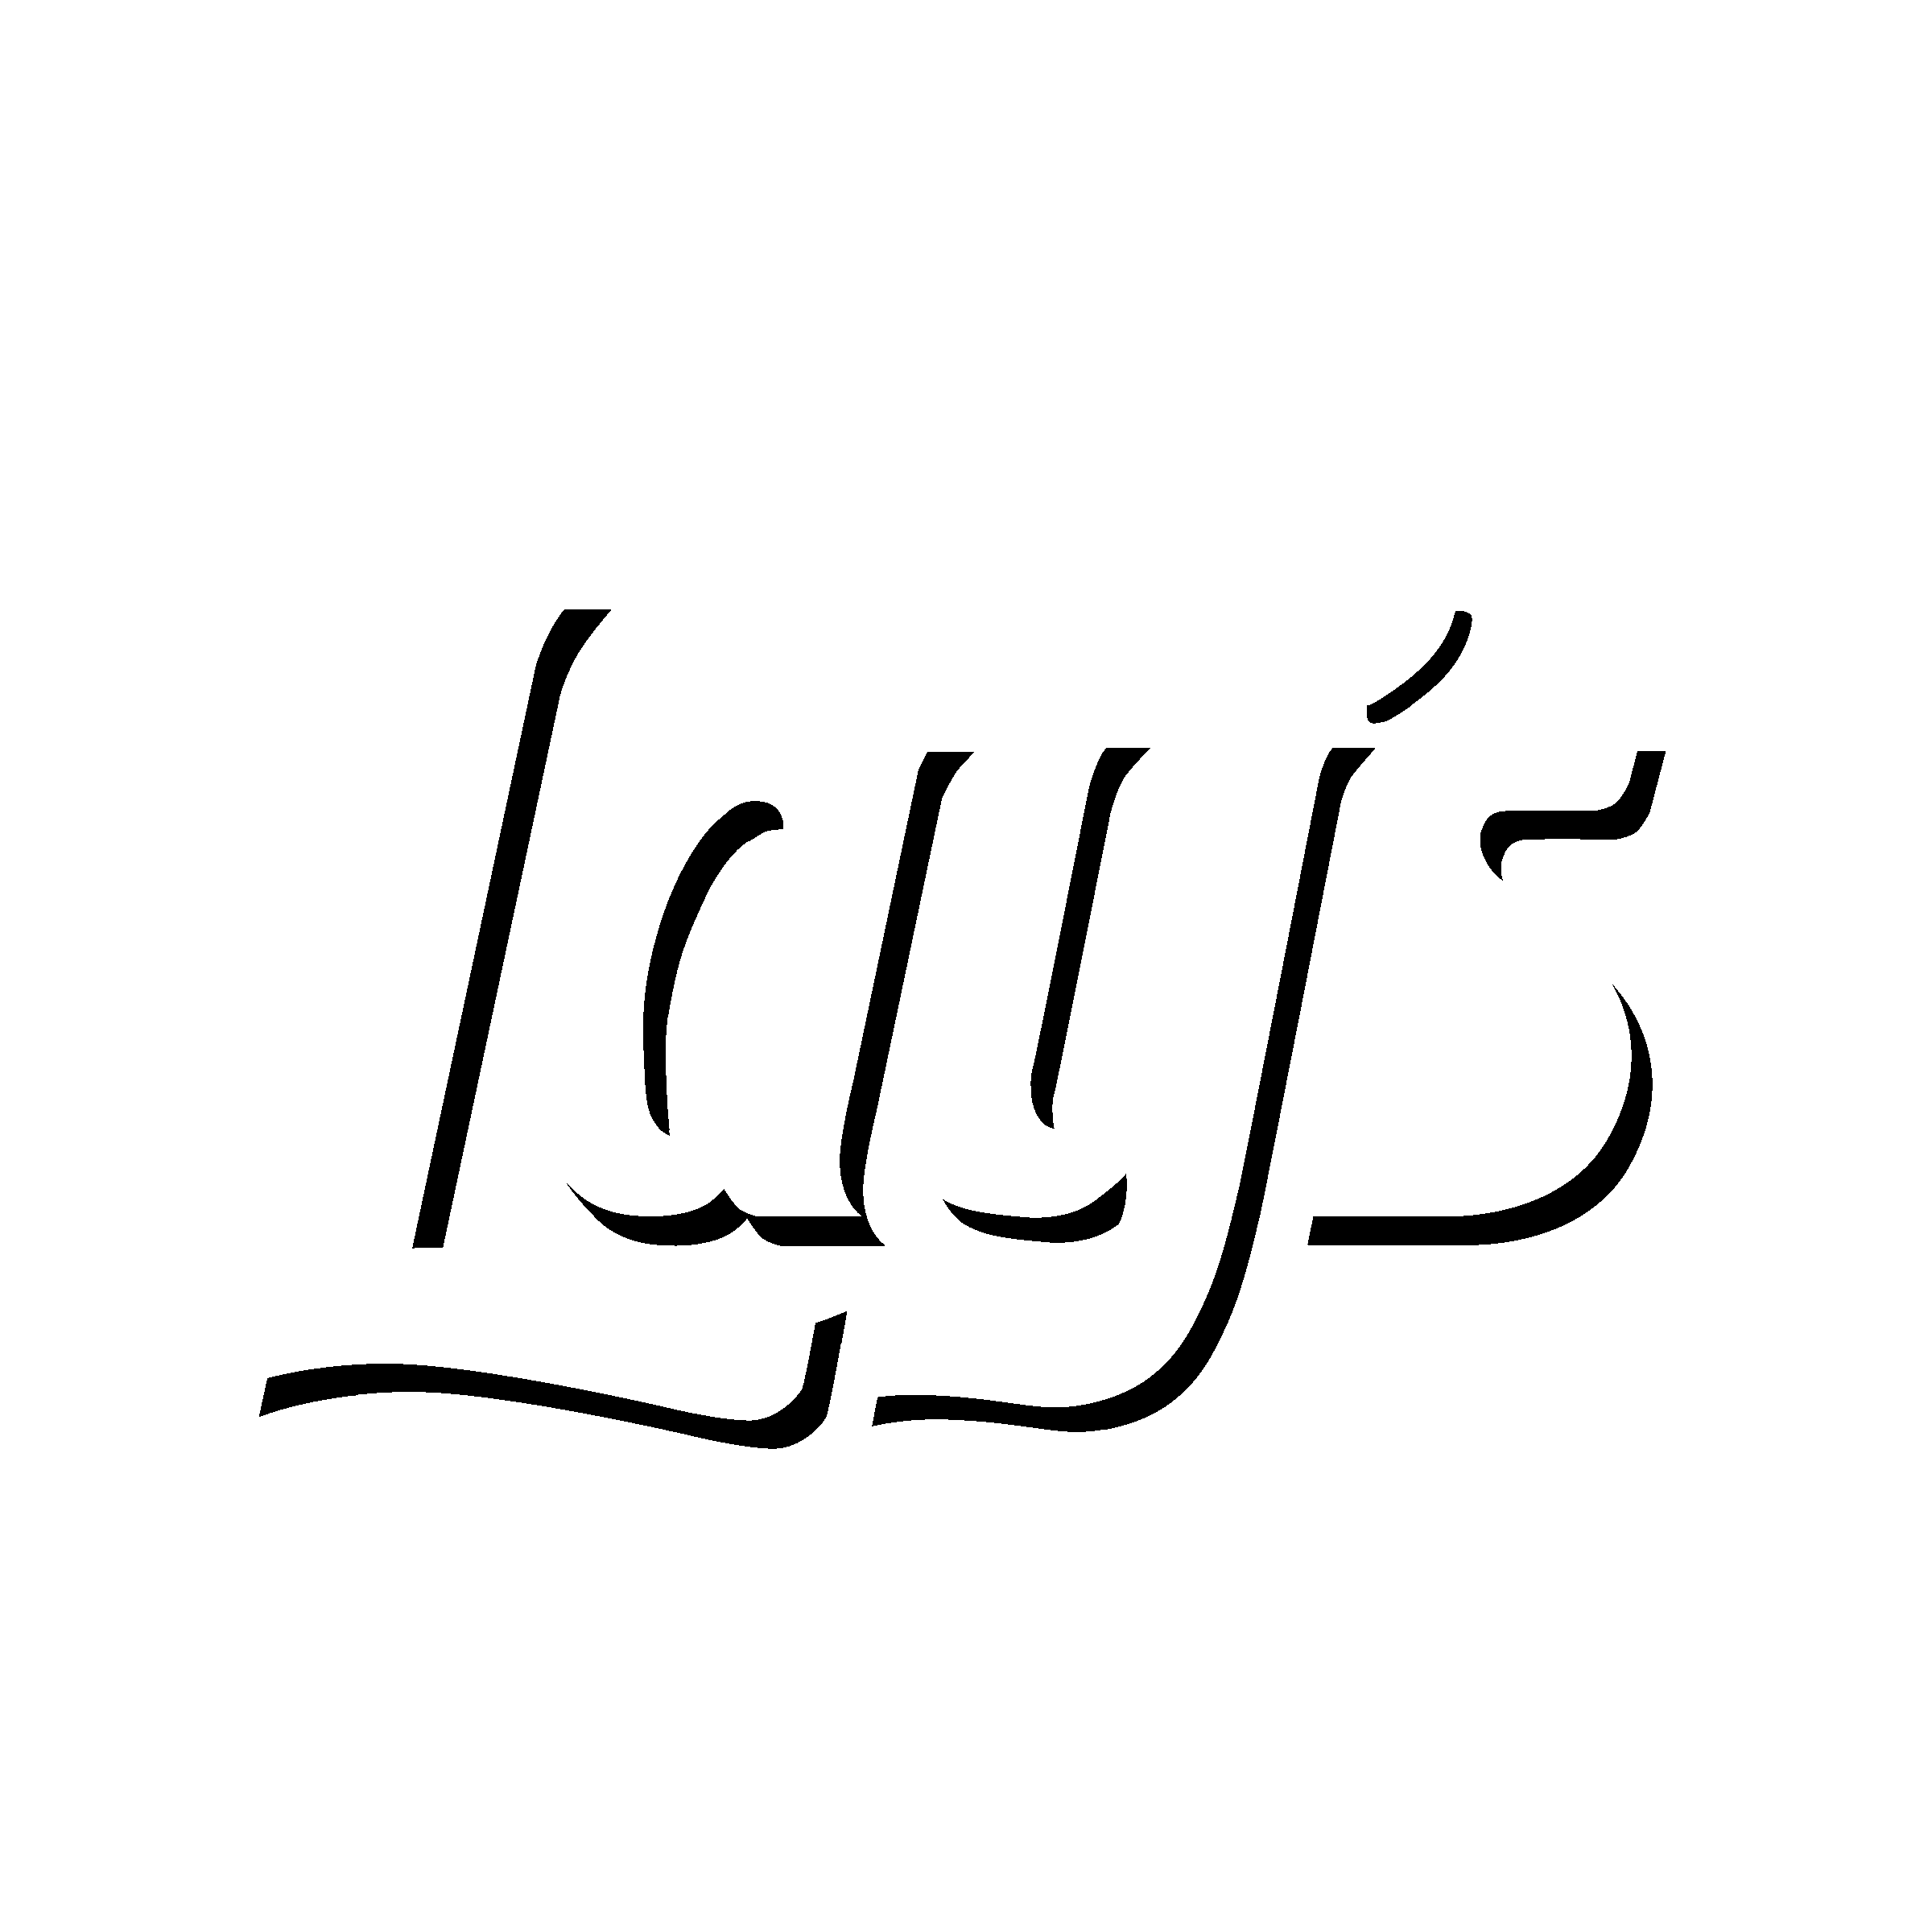 Lays Logo PNG Photos